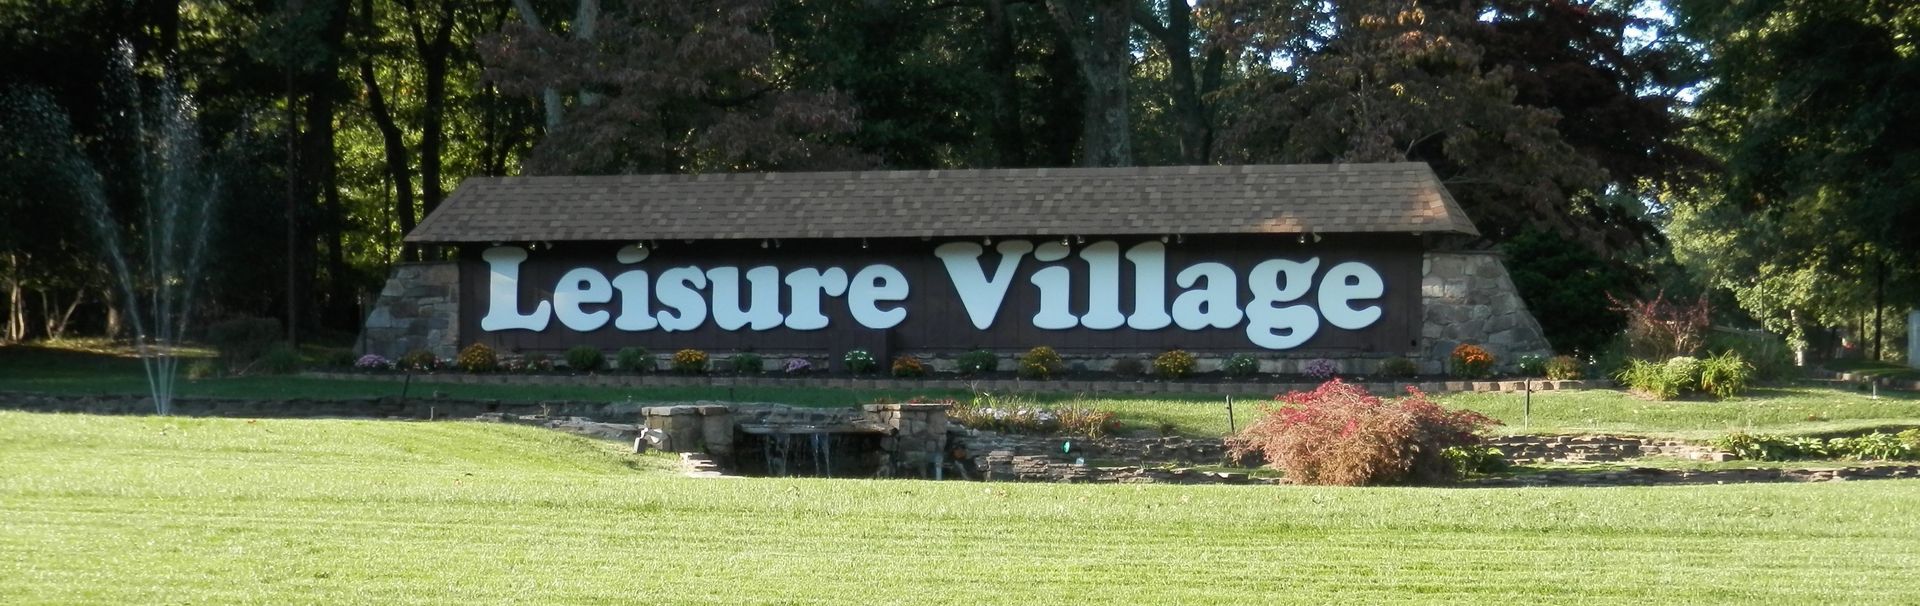 Leisure Village